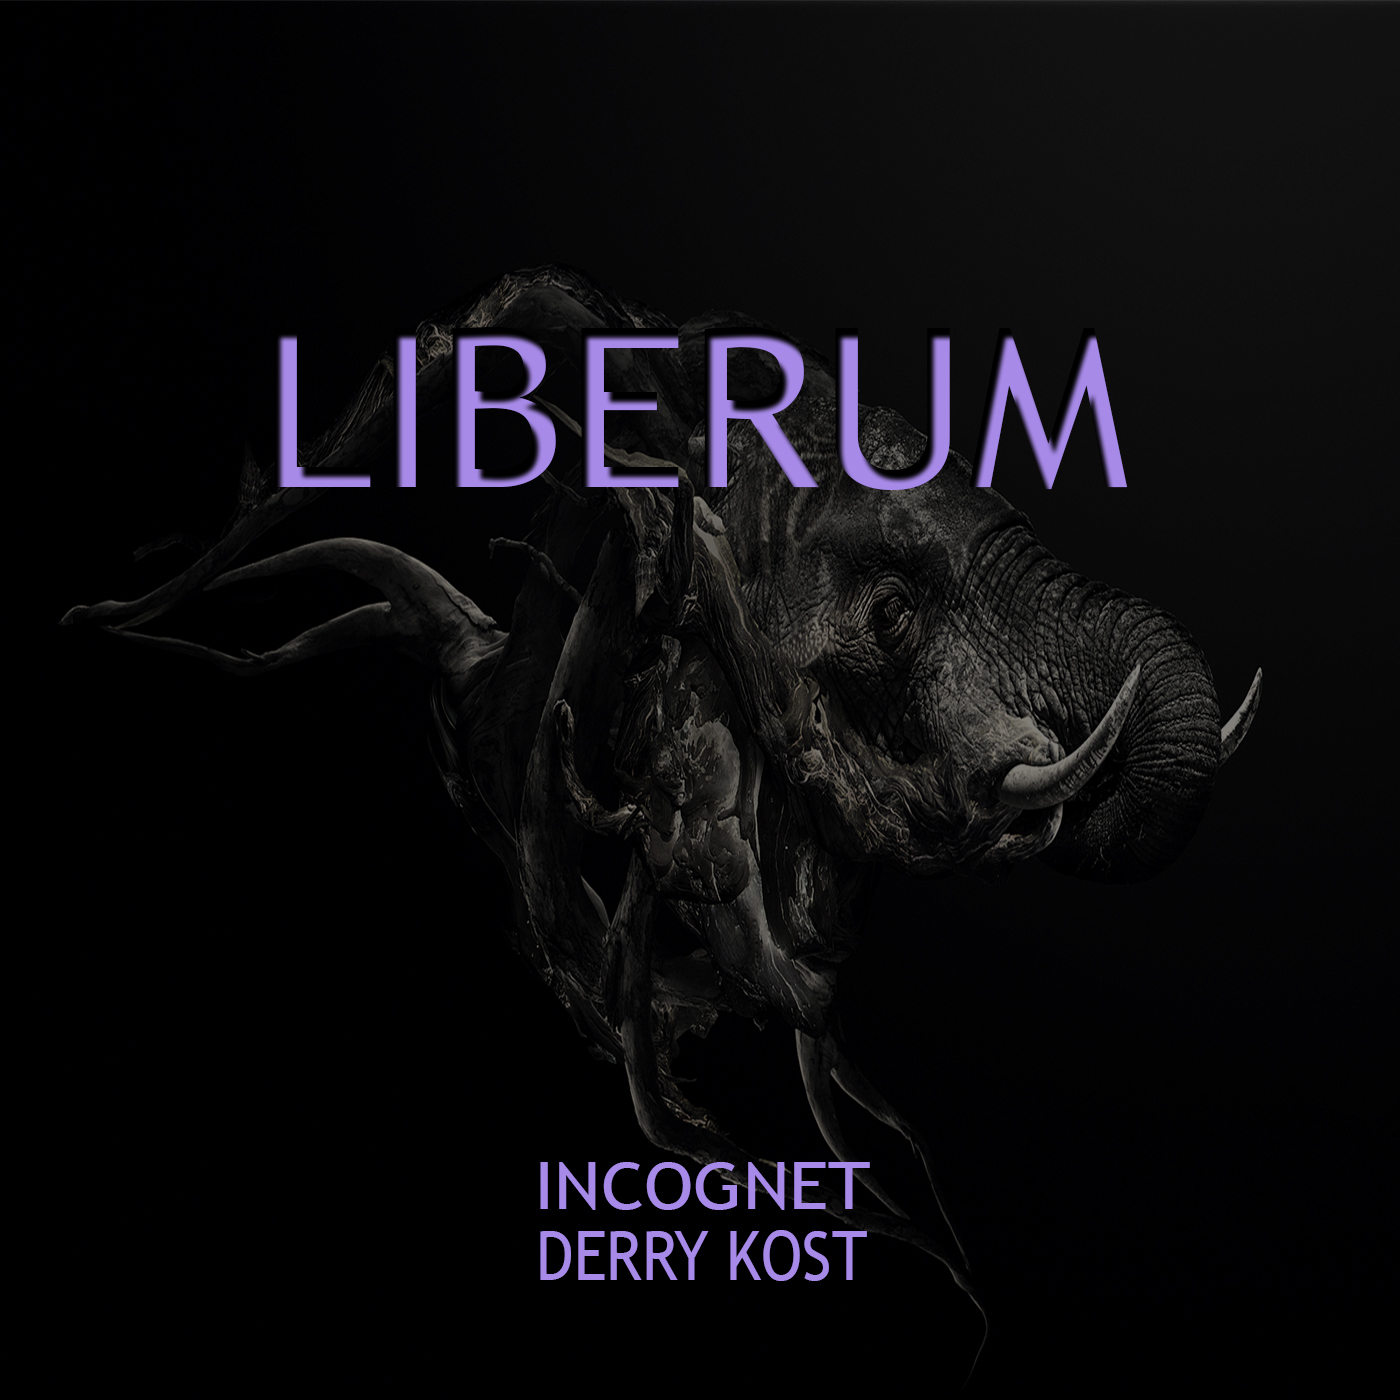 Incognet, Derry Kost - Liberum (original Mix) on Revolution Radio